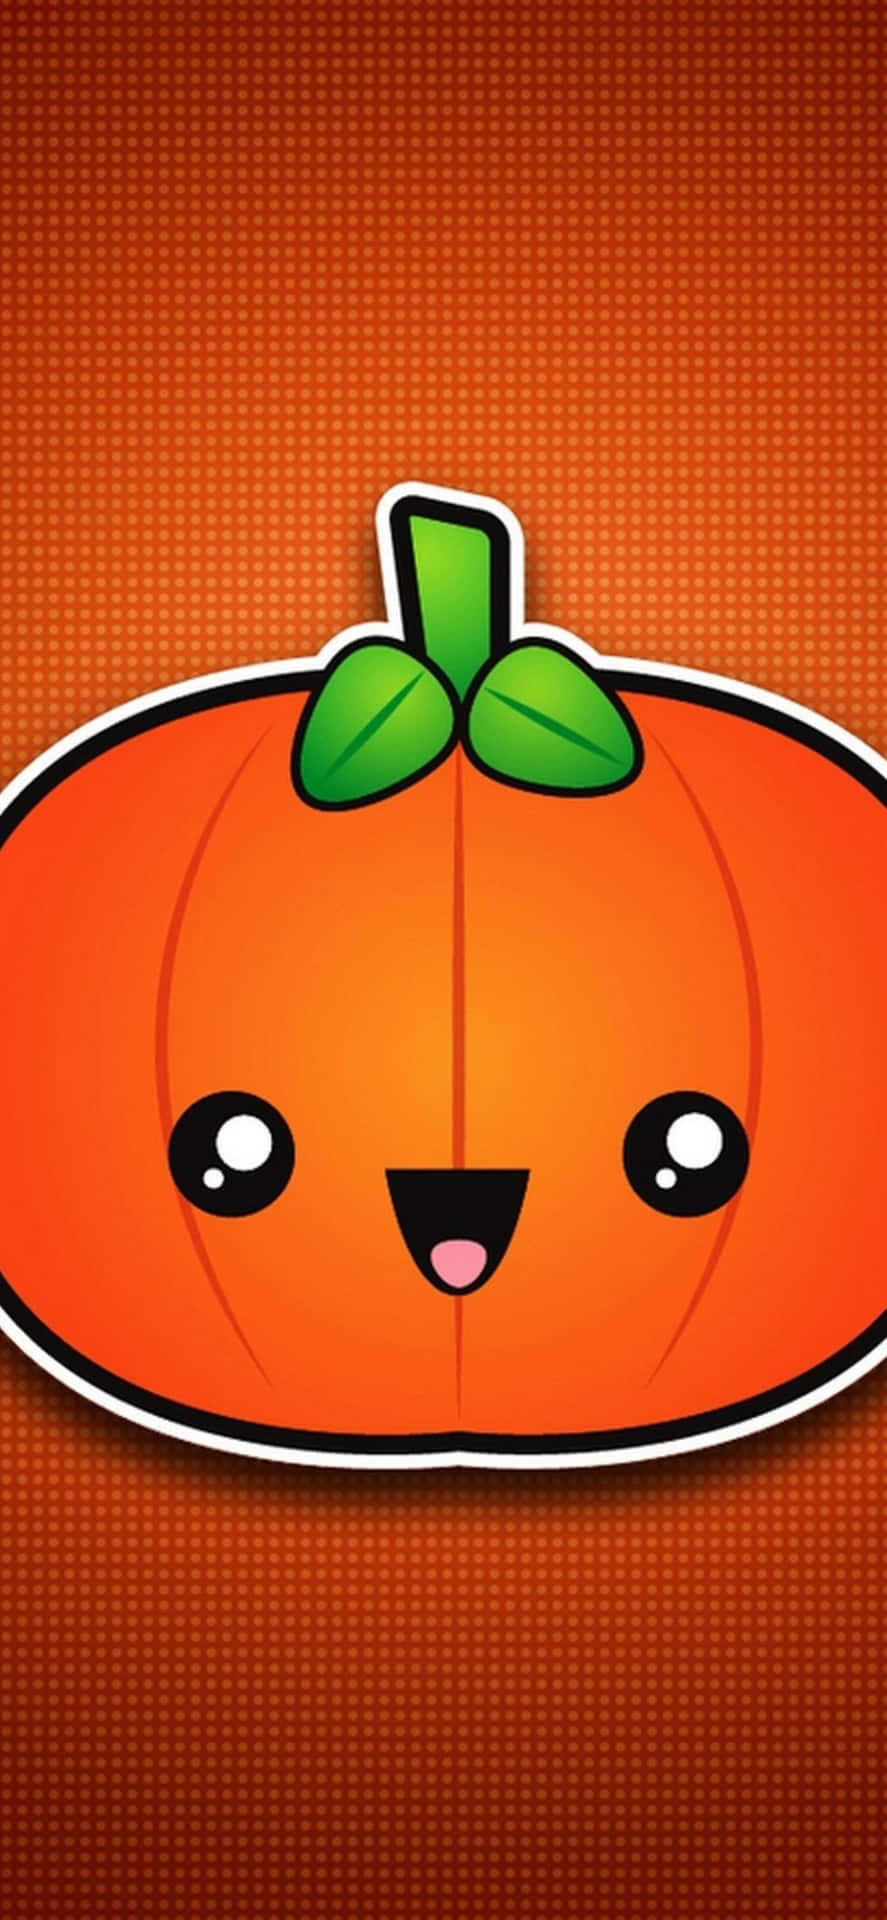 Kommein Halloween-stimmung Mit Diesem Festlichen Iphone-hintergrundbild